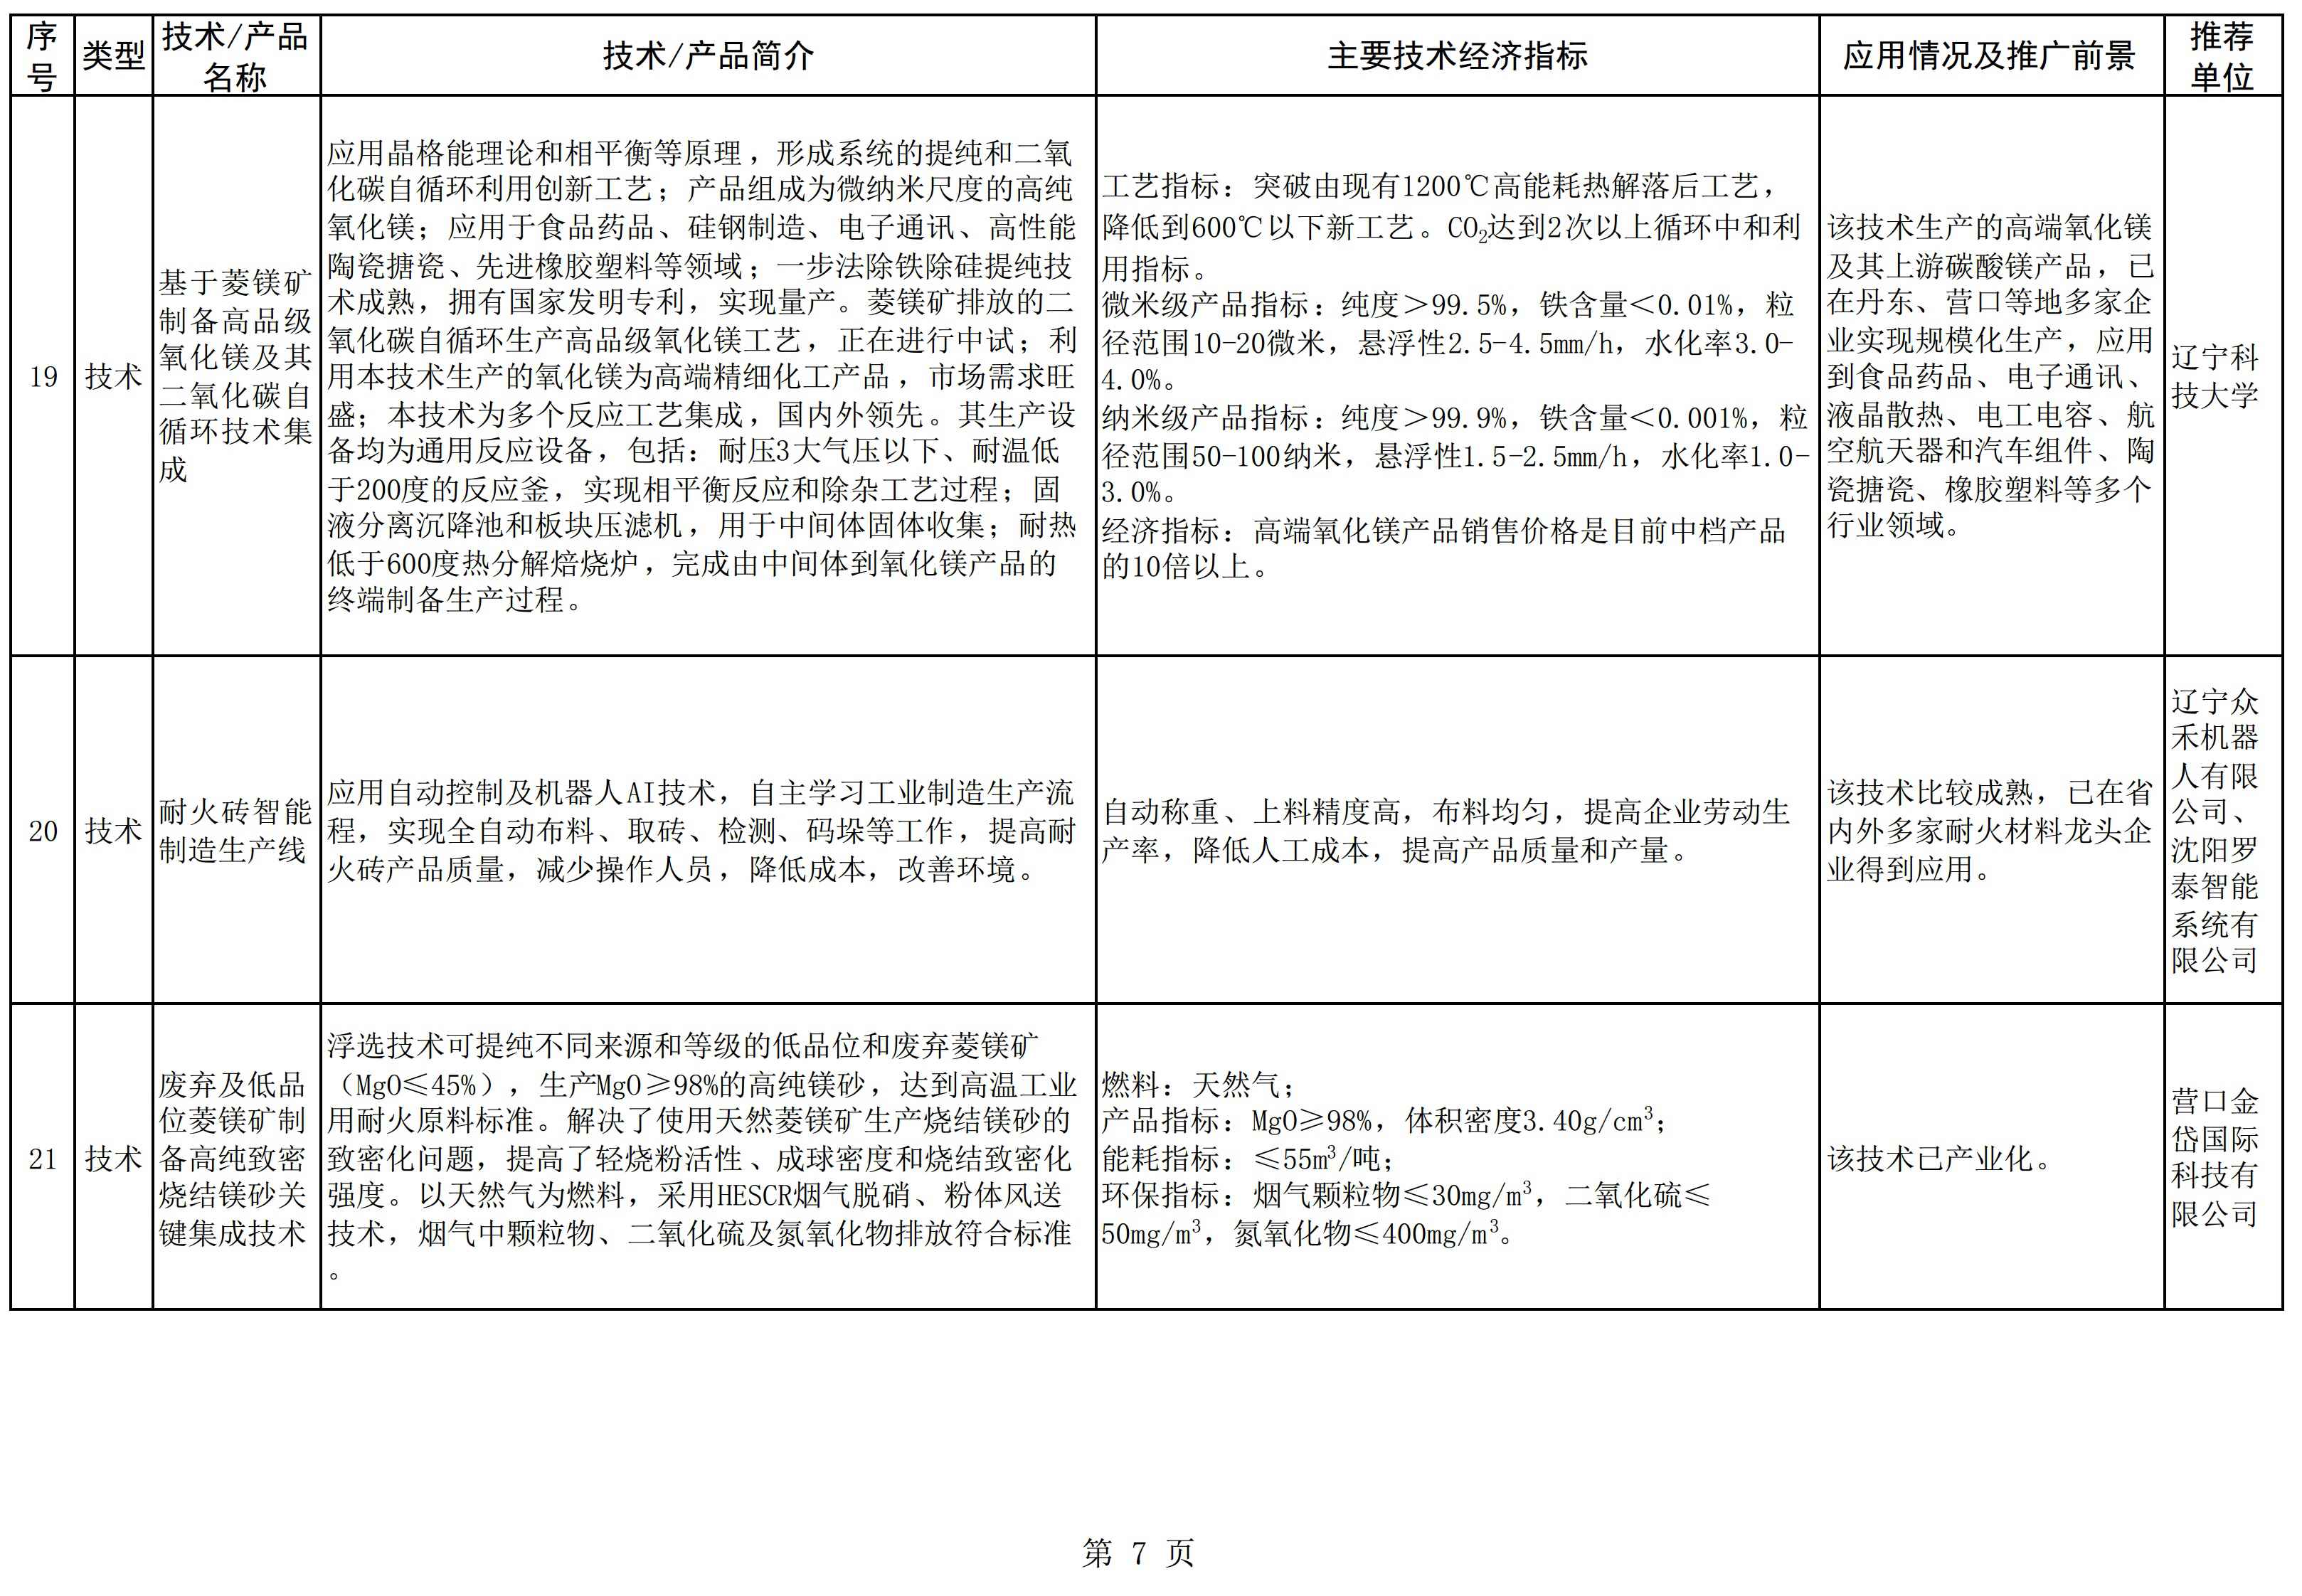 辽宁发布《菱镁产业鼓励推广应用的技术及产品目录（2022年本）》